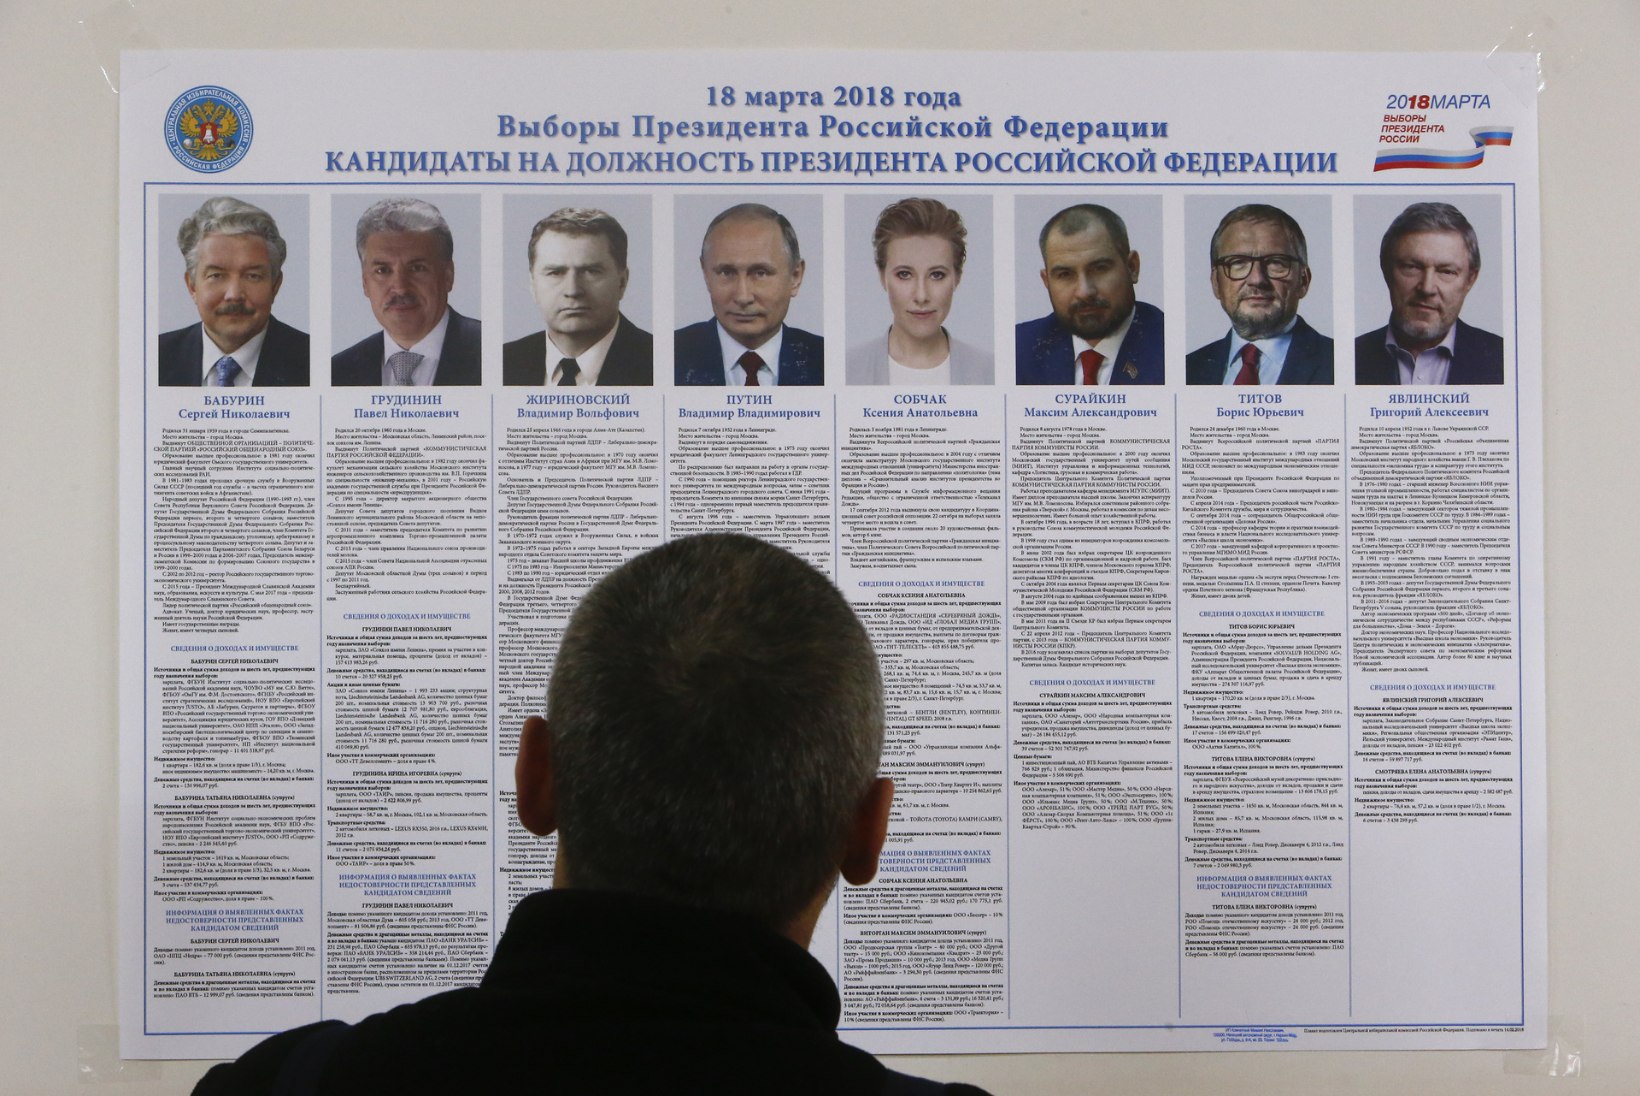 Mihhail Hodorkovski algatas kampaania: "Putinist on kõrini."